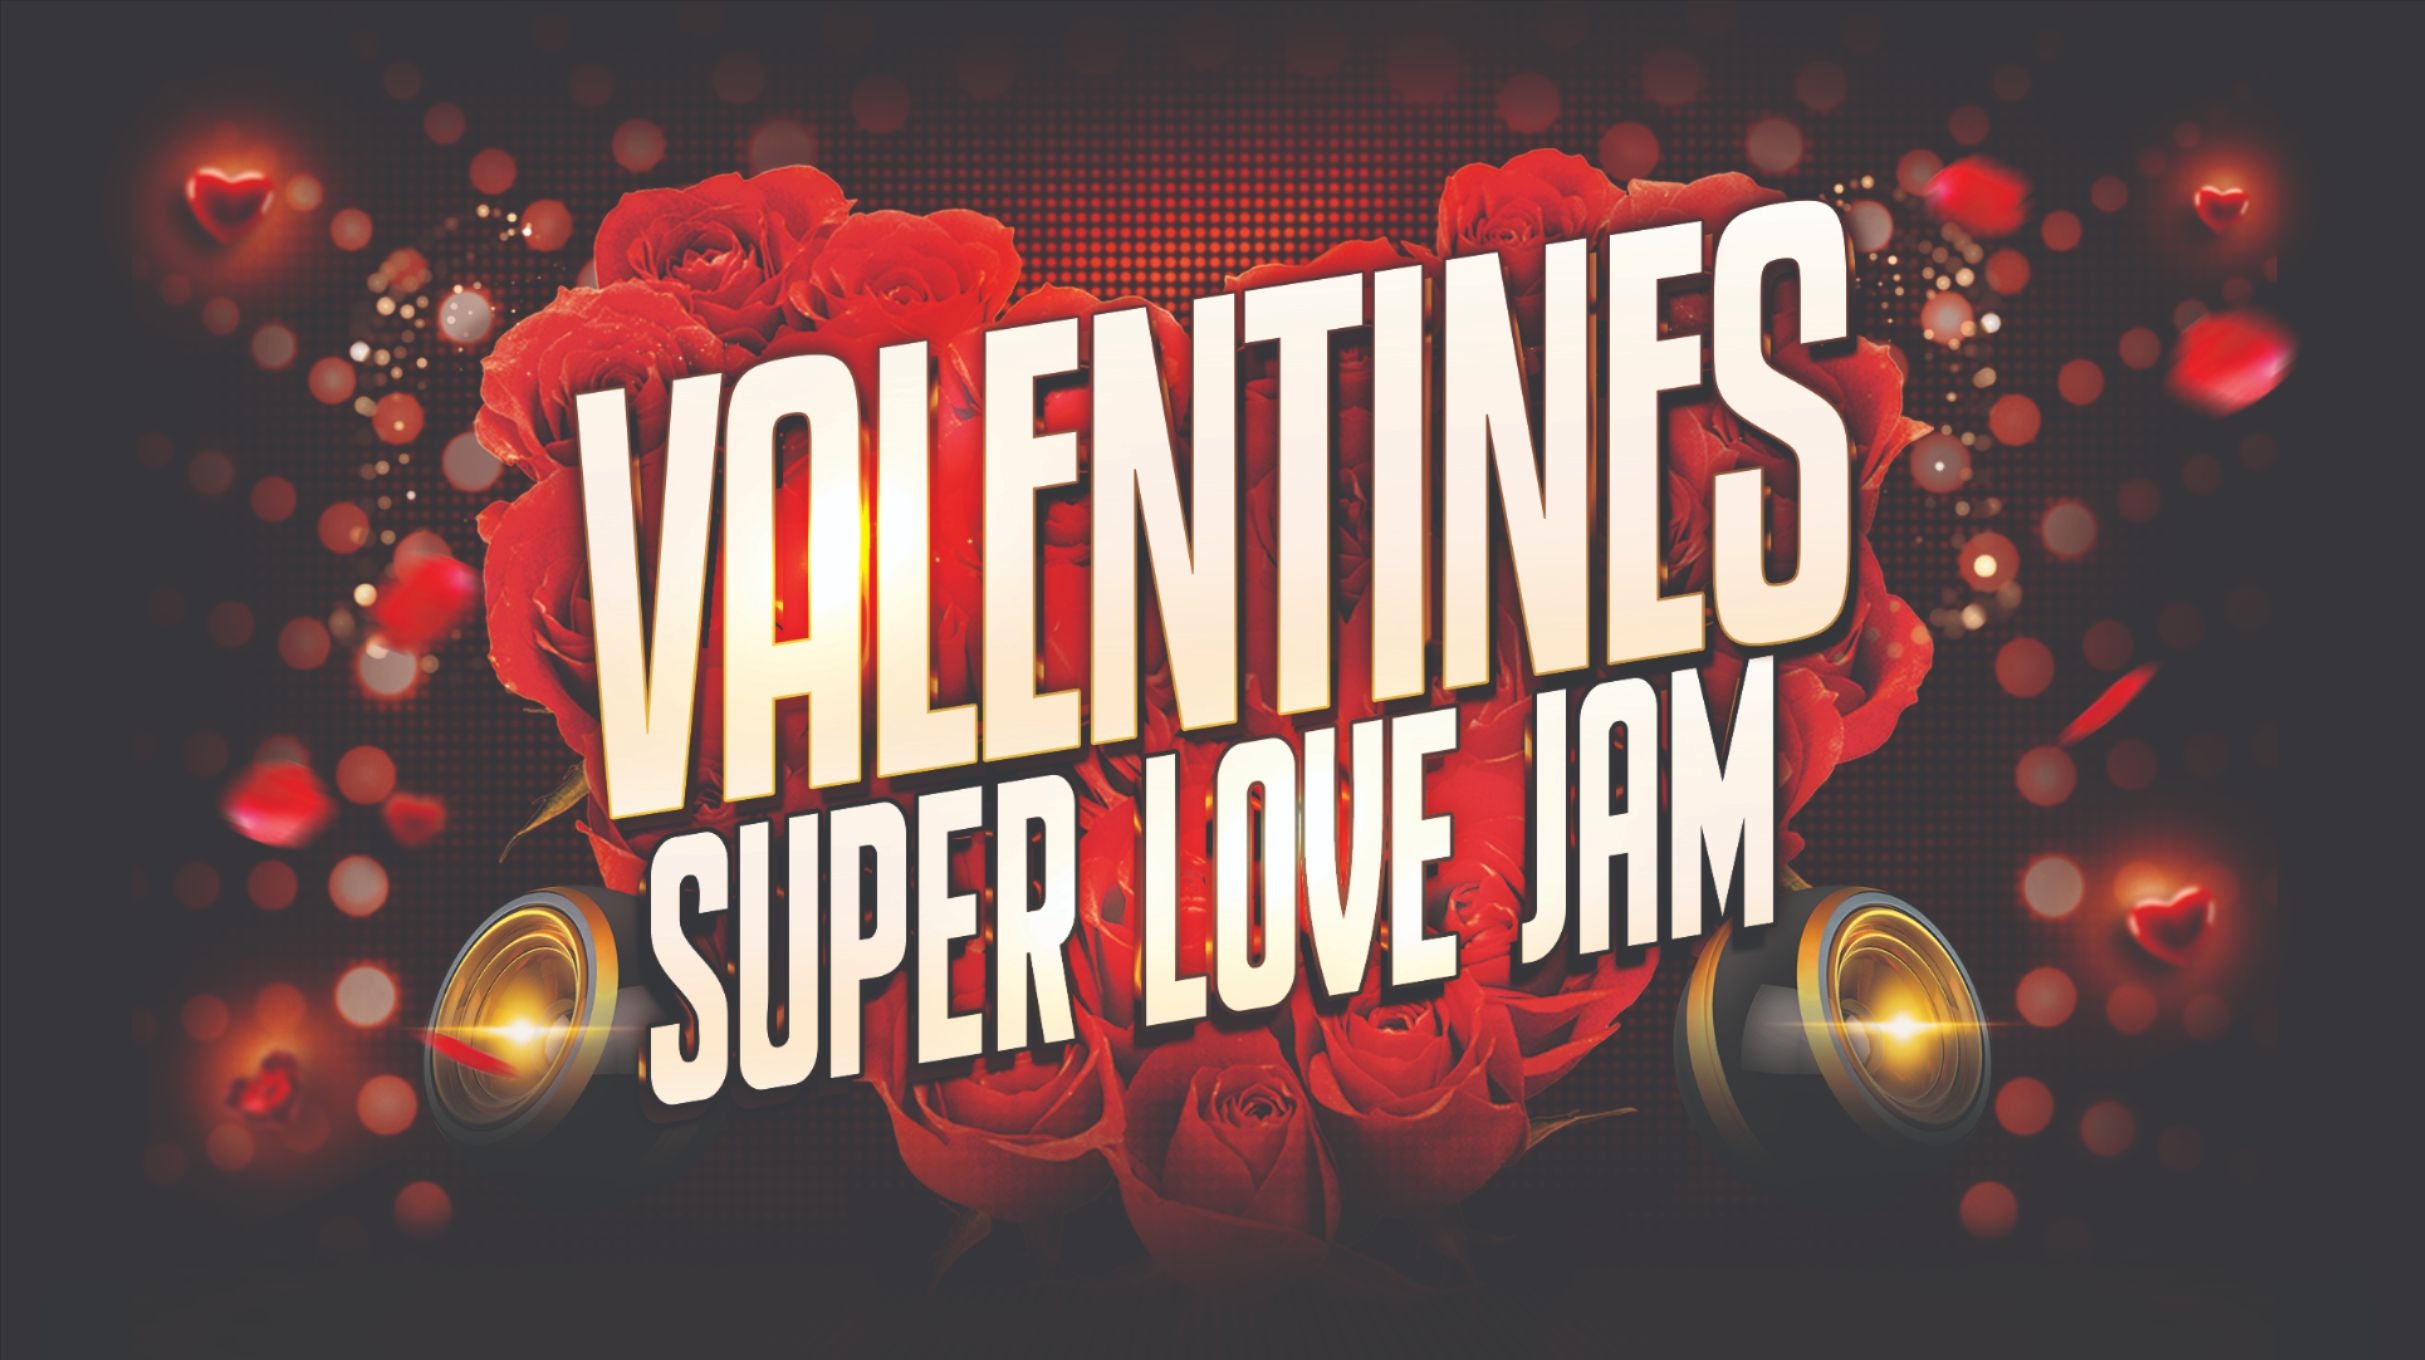 Valentines Super Love Jam